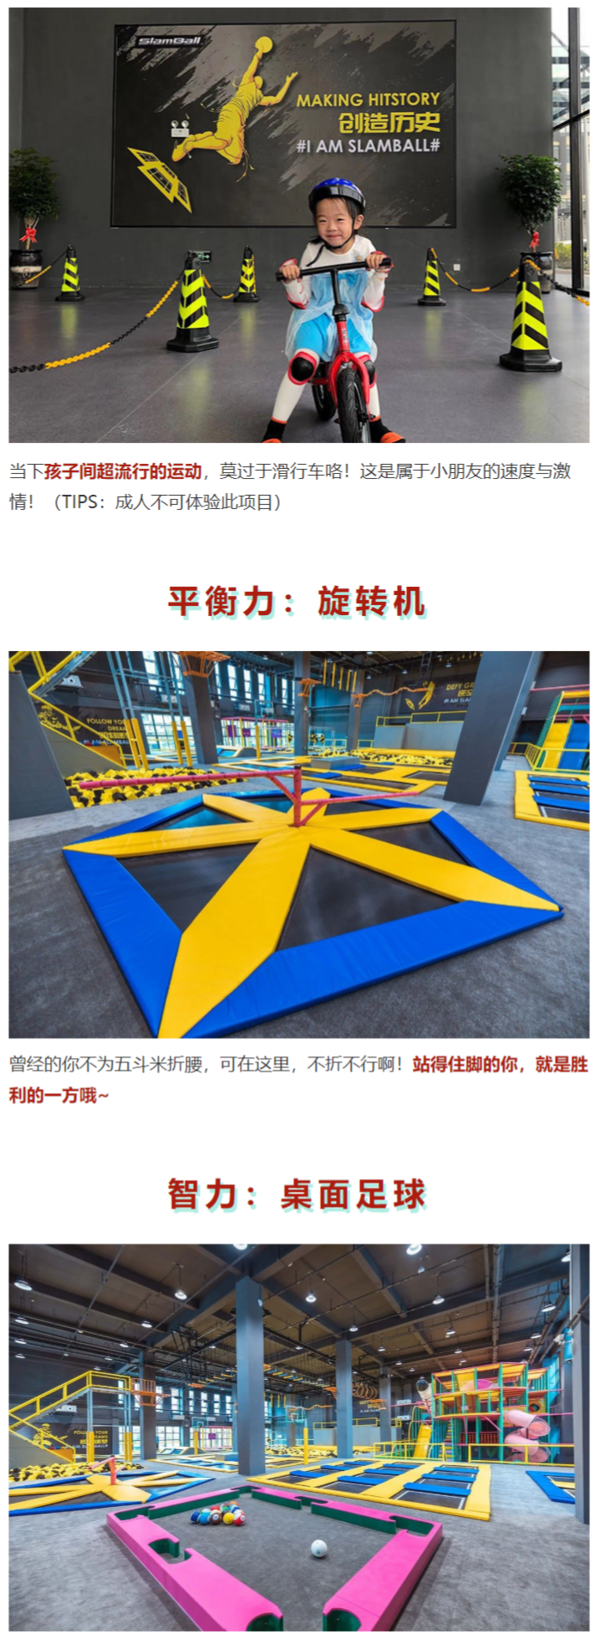 当地玩乐：总面积约2500㎡  20+种刺激项目！上海SlamBall斯篮搏运动娱乐中心 门票